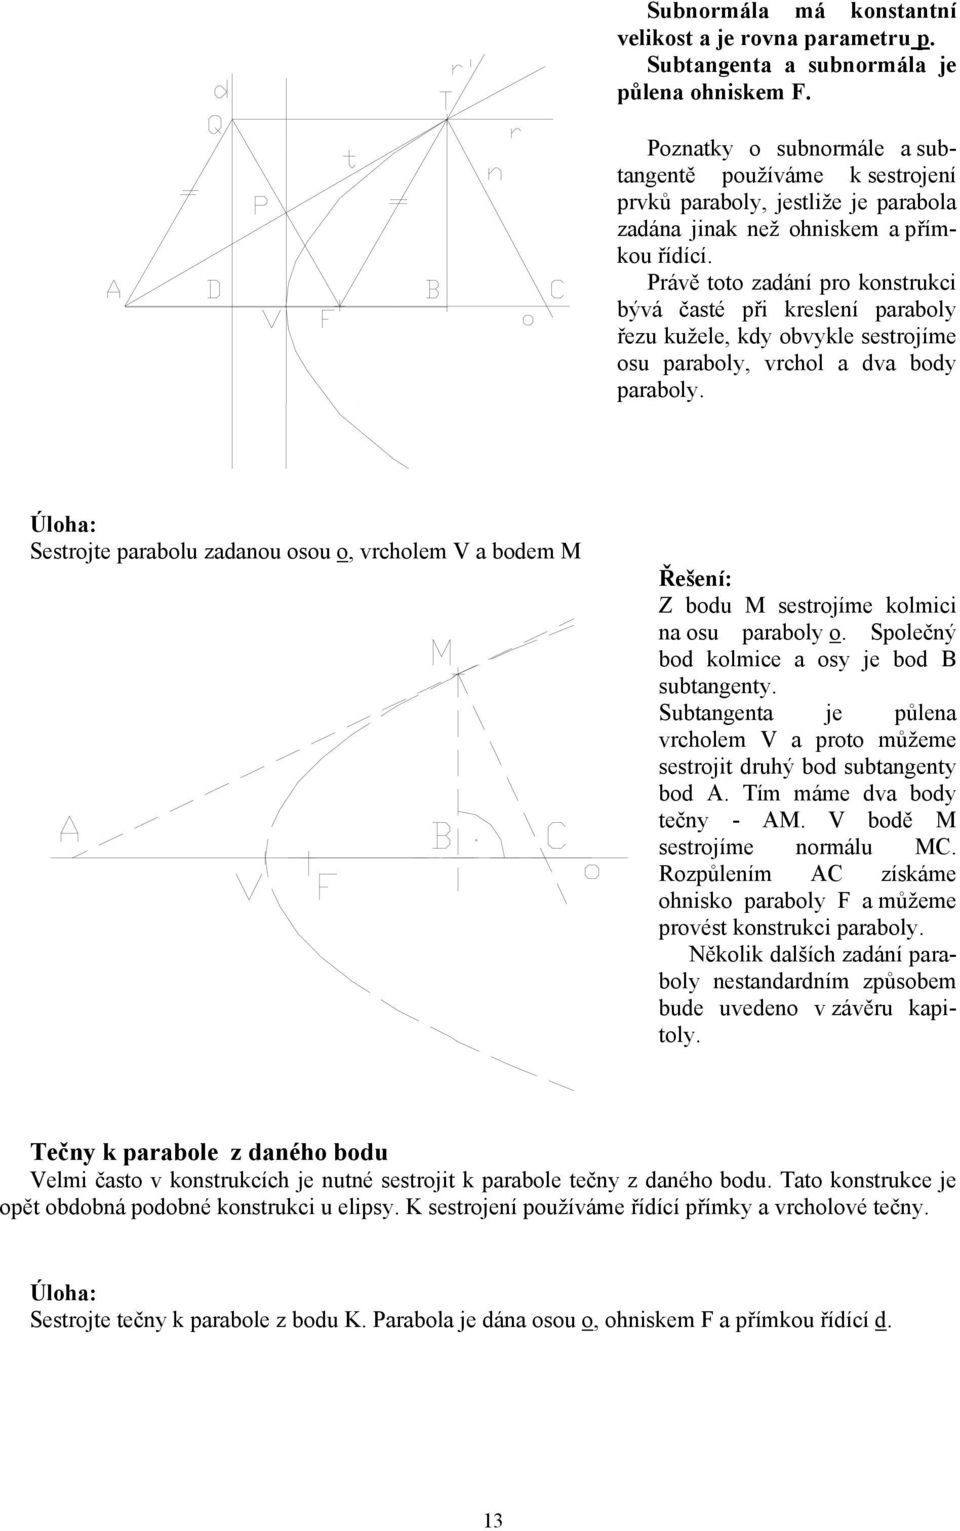 Právě toto zadání pro konstrukci bývá časté při kreslení paraboly řezu kužele, kdy obvykle sestrojíme osu paraboly, vrchol a dva body paraboly.